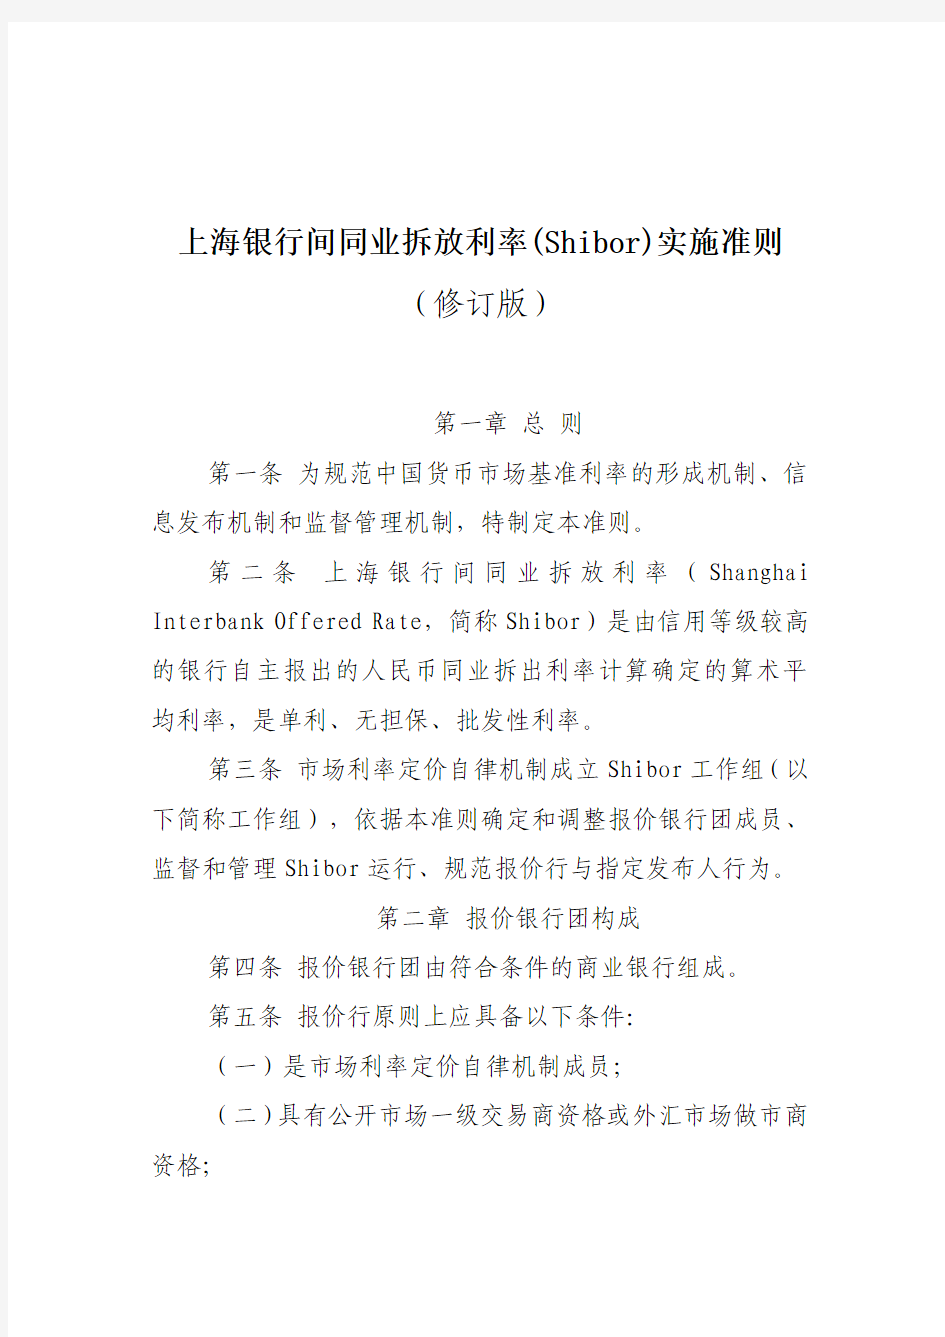 上海银行间同业拆放利率(Shibor)实施准则(修订版)